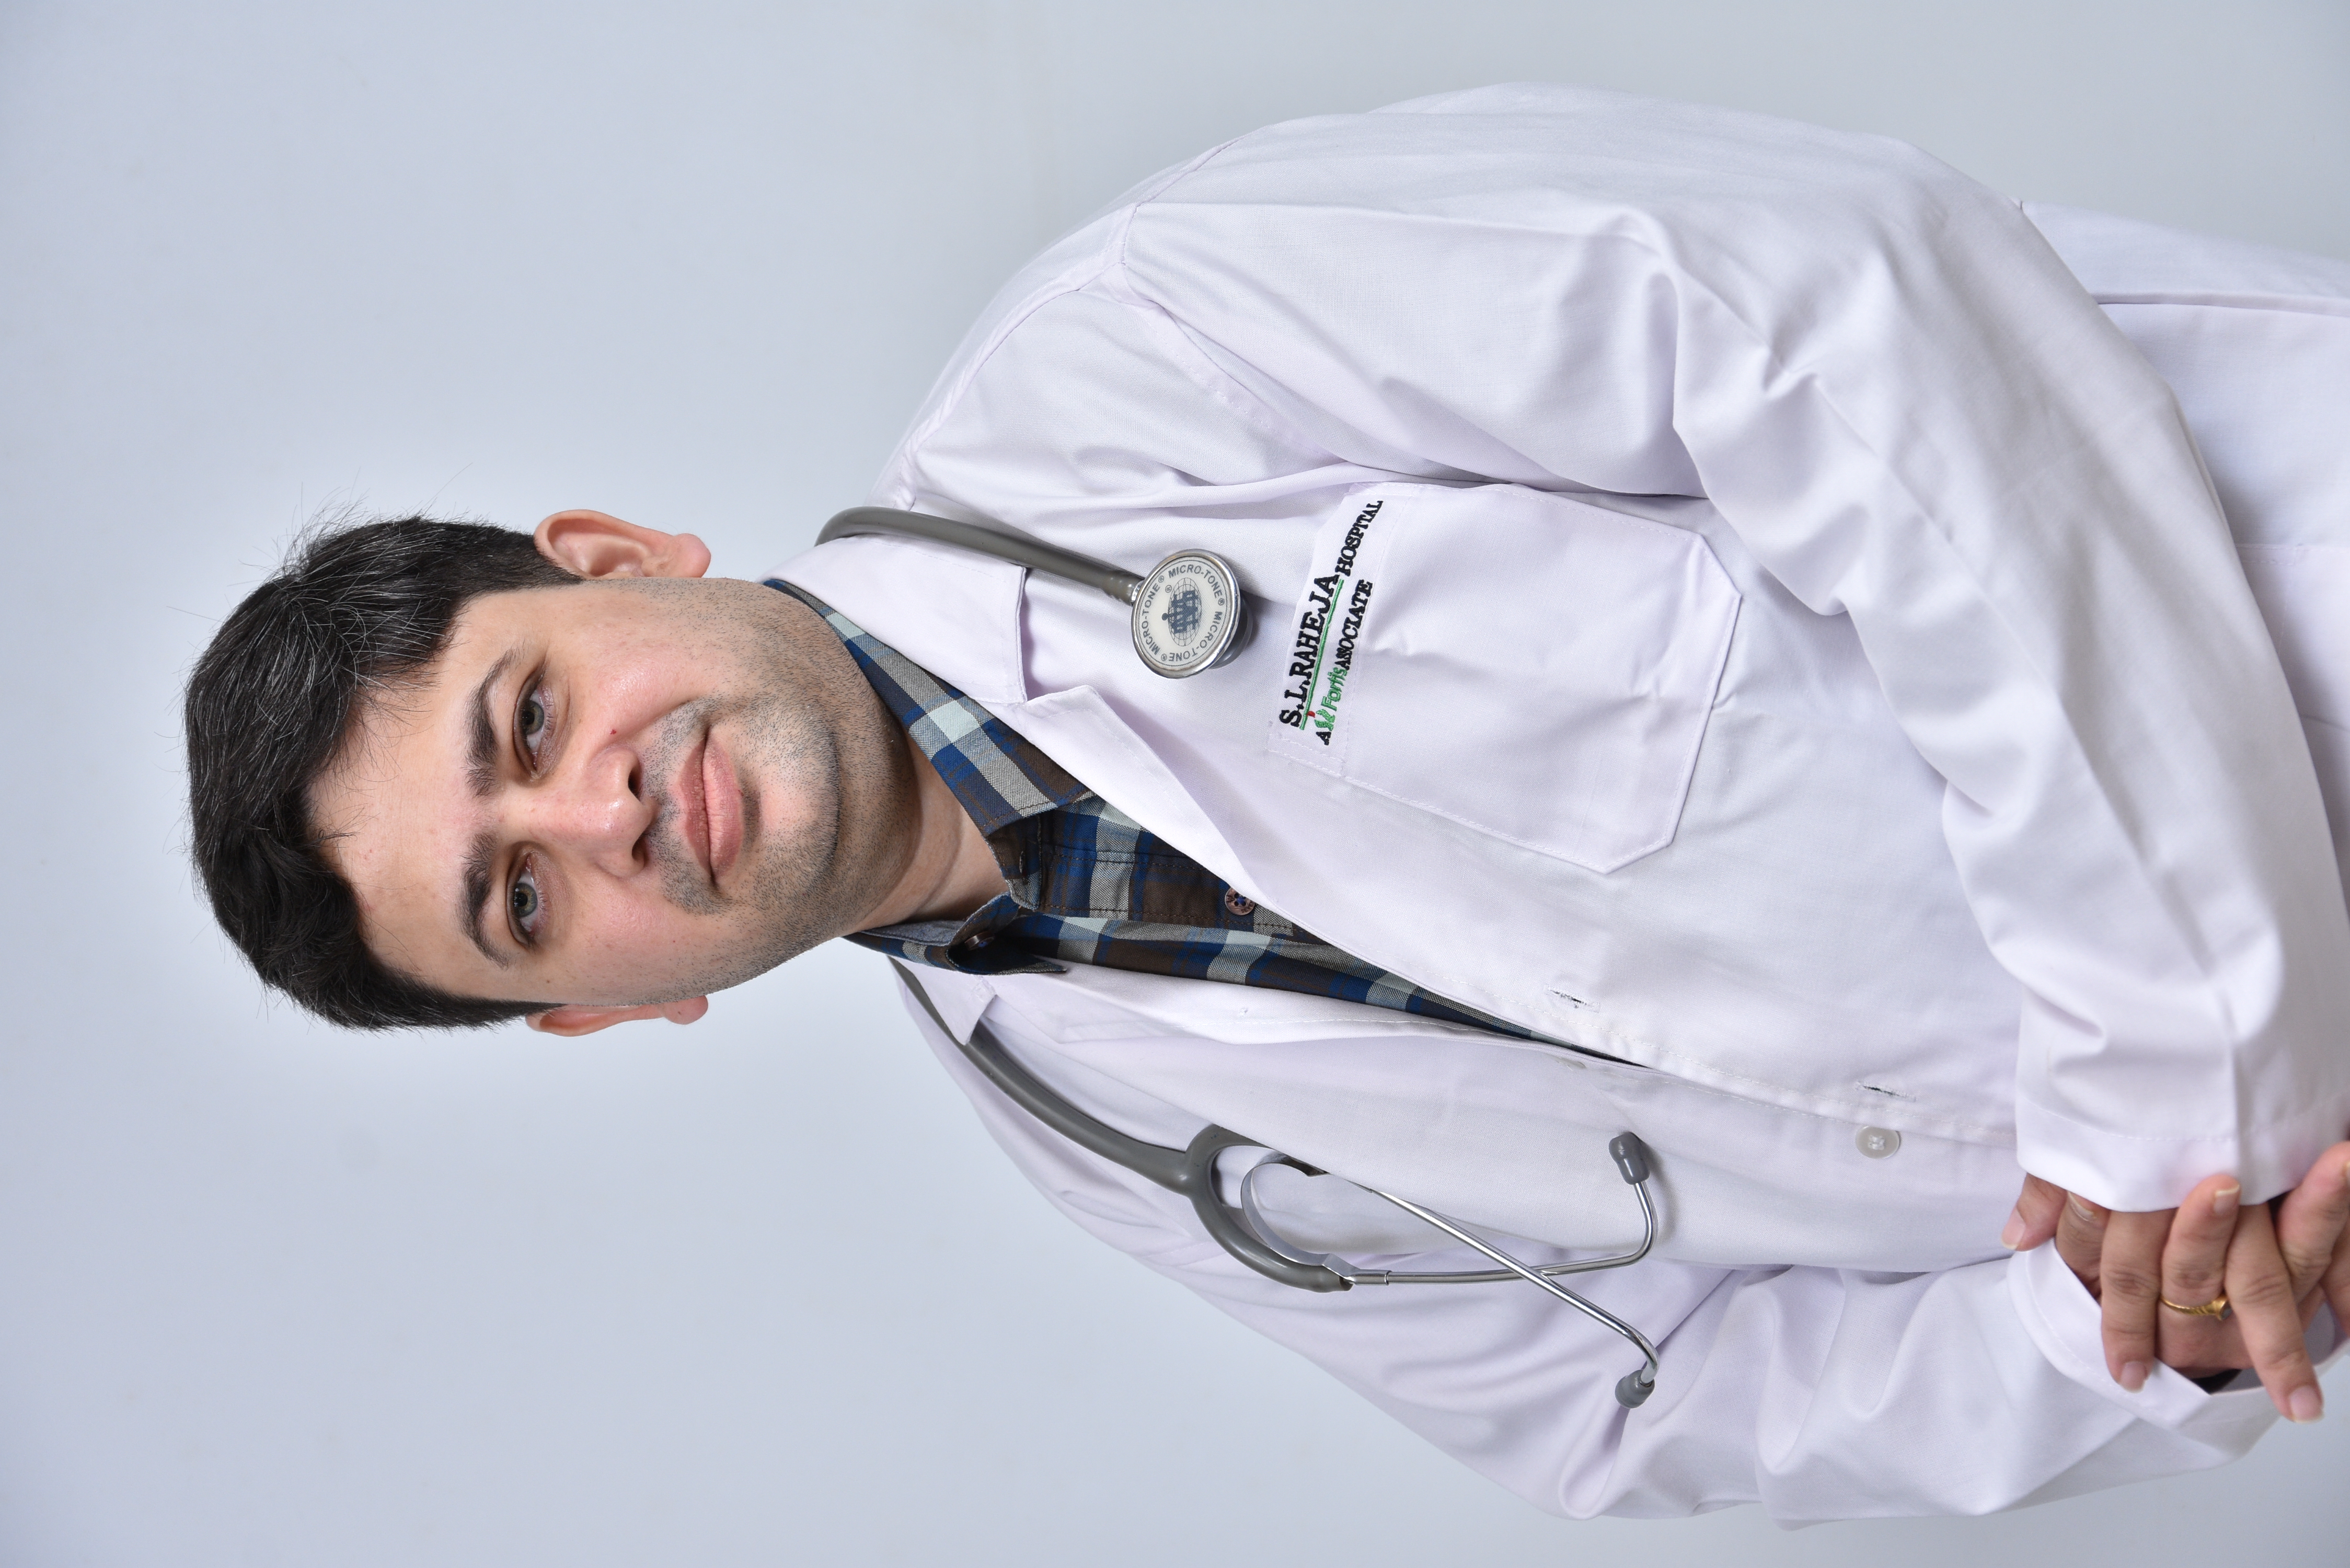 Dr. Akshay Shah